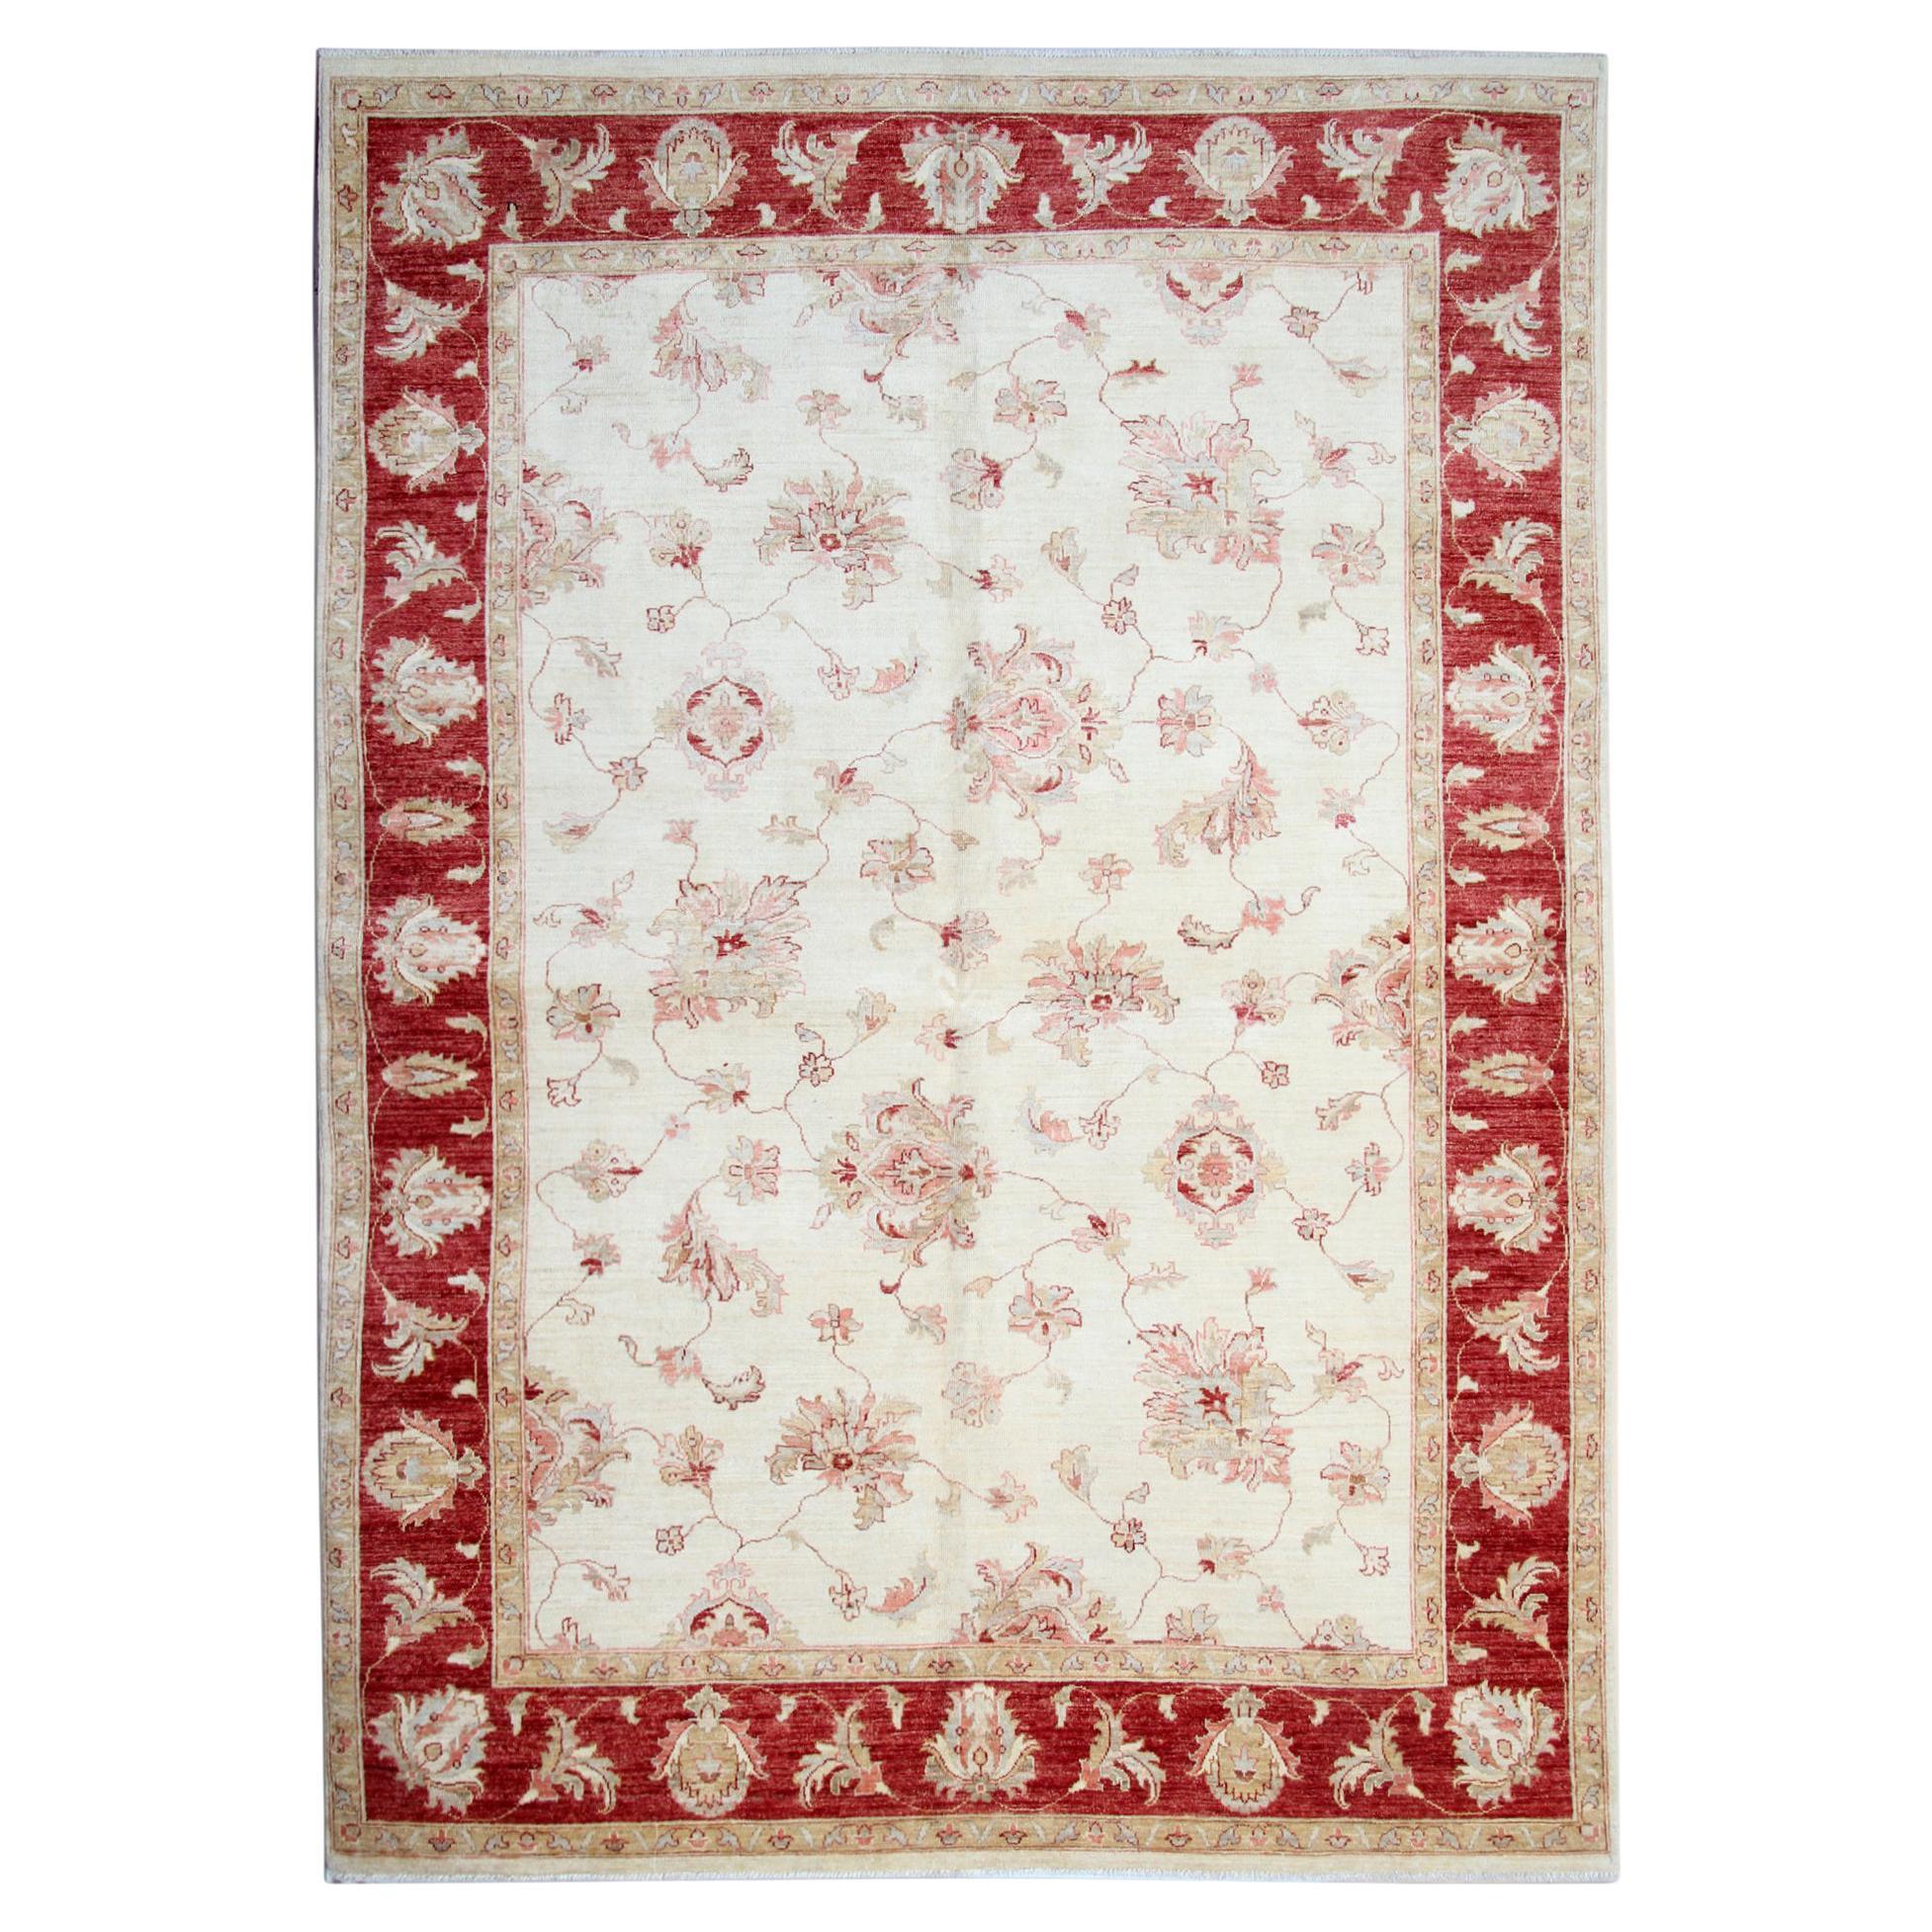 Tapis traditionnel Ziegler rouge crème, tapis oriental en laine fait à la main